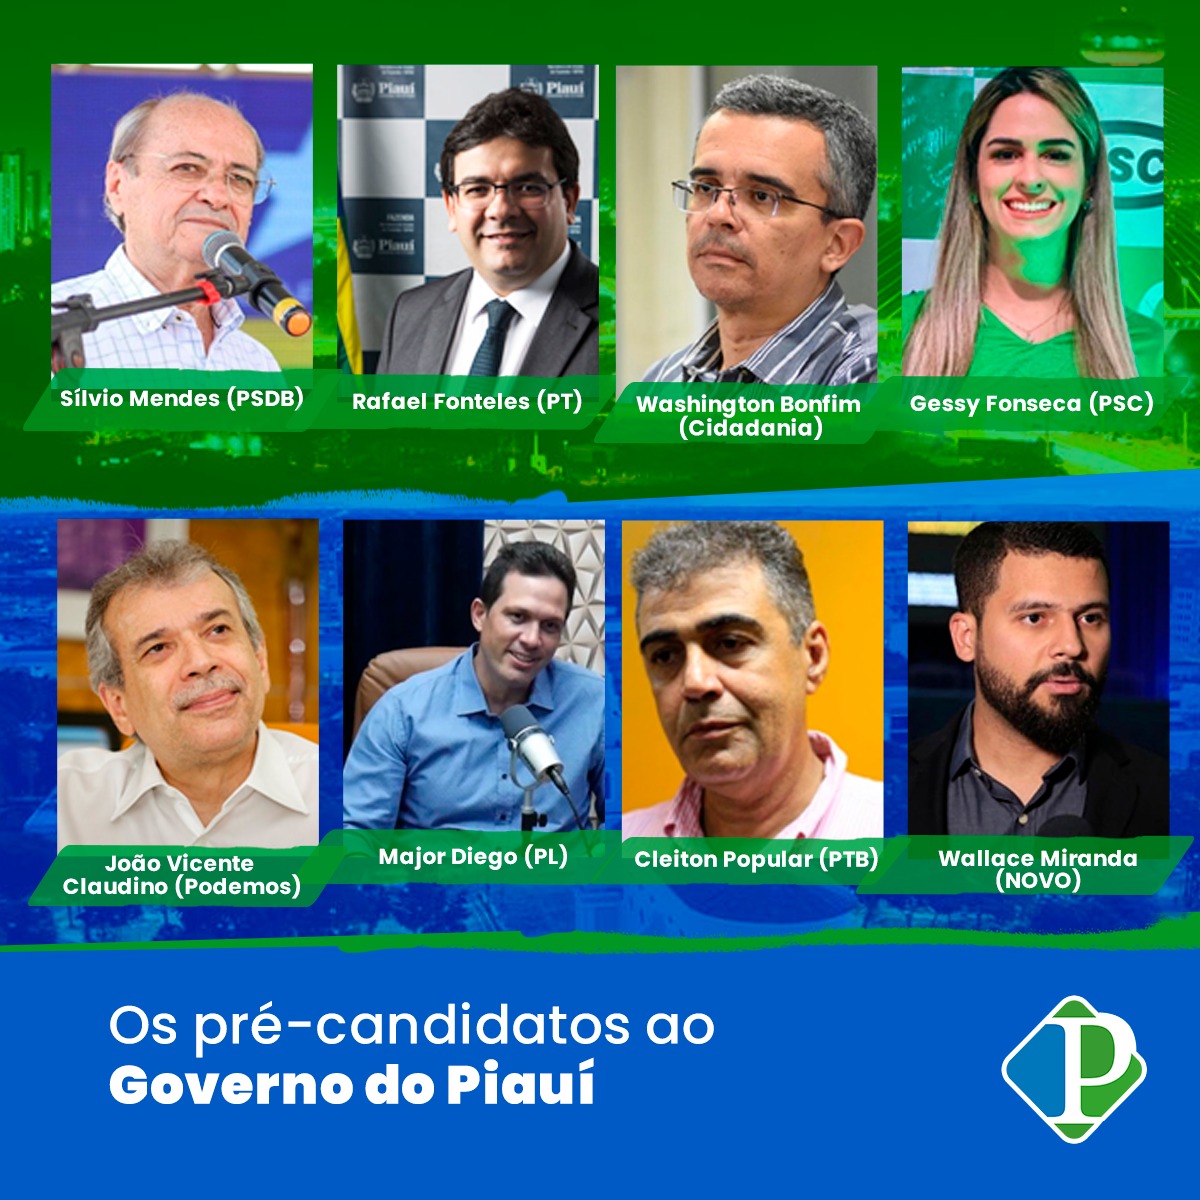 Os pré-candidatos ao Governo do Piauí